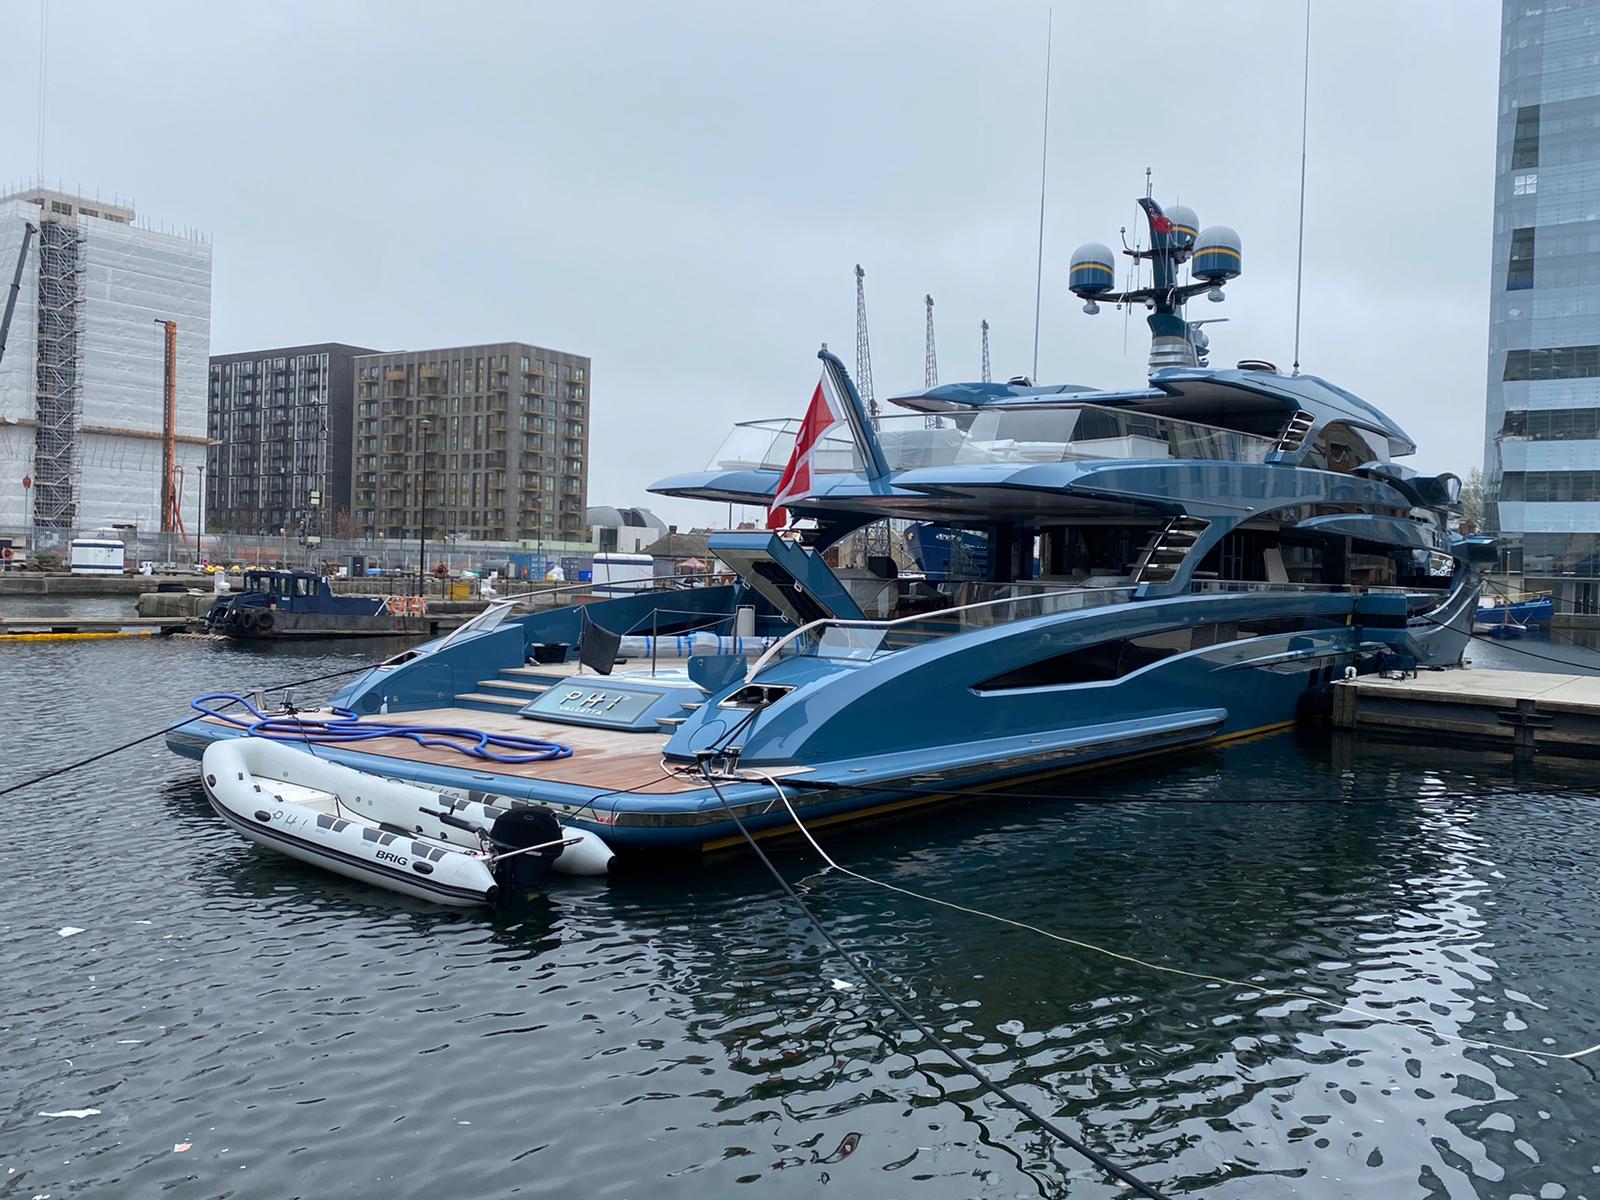 Superyacht Phi de 38 de milioane de lire sterline reținut în Canary Wharf